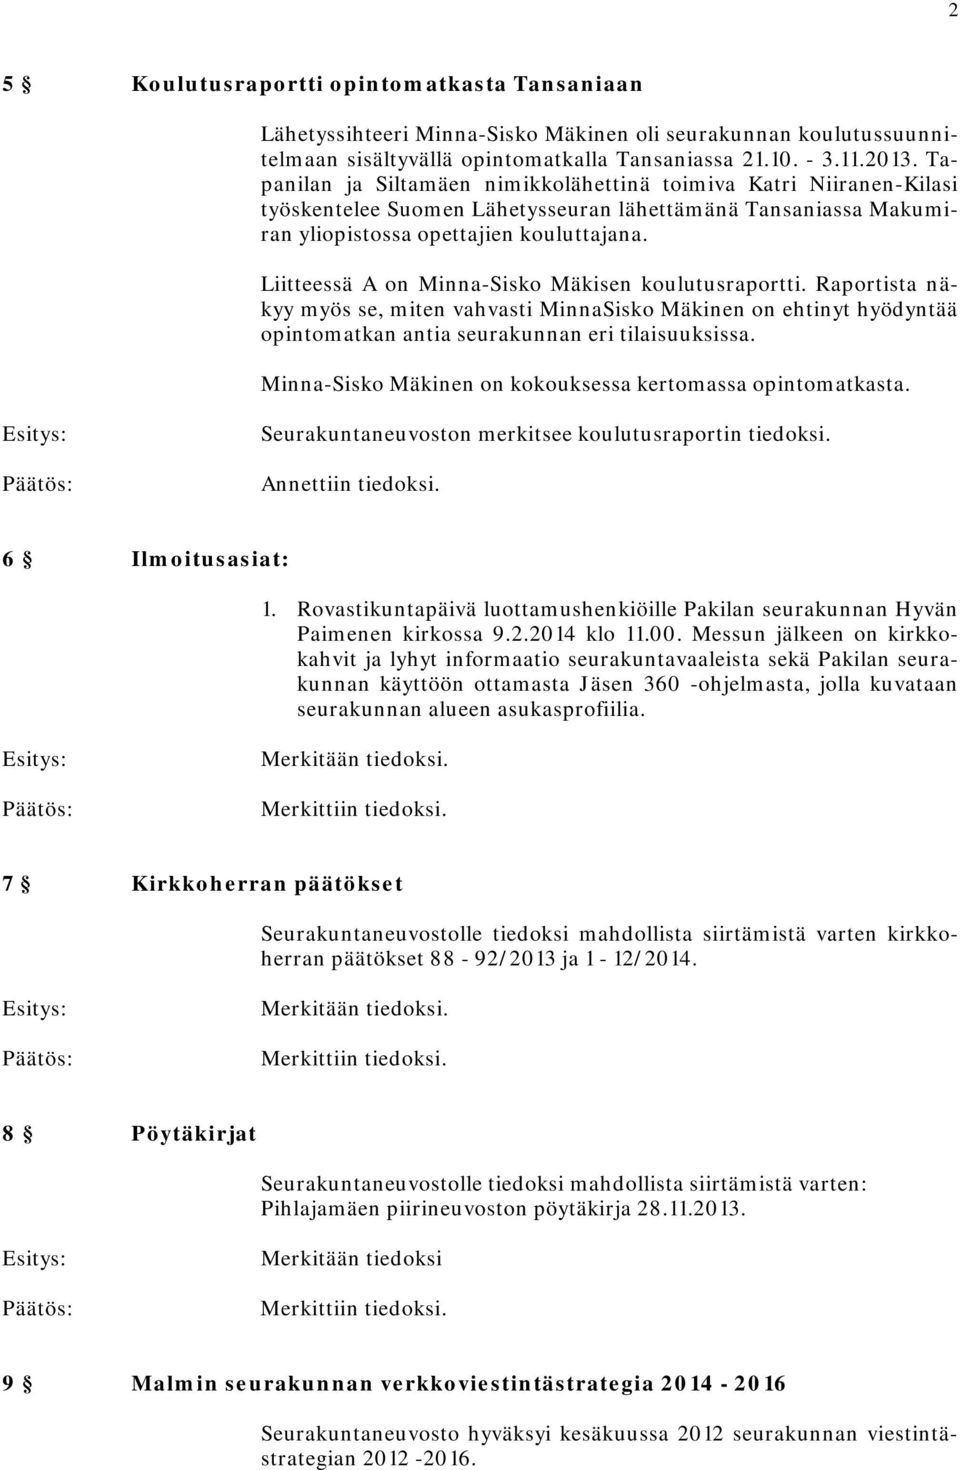 Liitteessä A on Minna-Sisko Mäkisen koulutusraportti. Raportista näkyy myös se, miten vahvasti MinnaSisko Mäkinen on ehtinyt hyödyntää opintomatkan antia seurakunnan eri tilaisuuksissa.